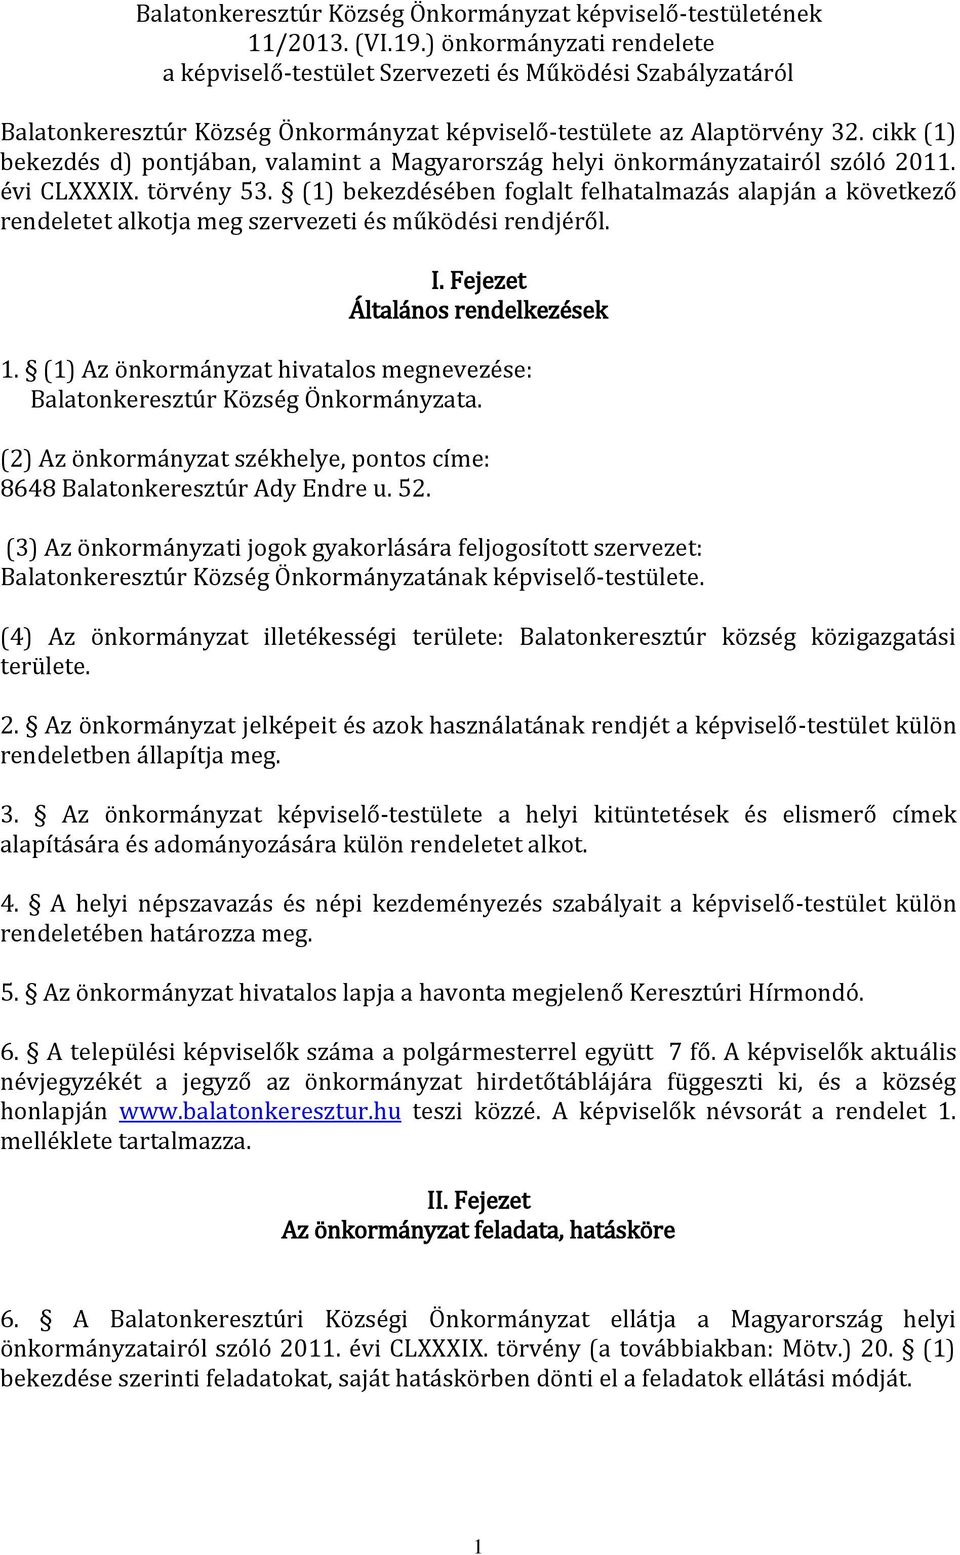 cikk (1) bekezdés d) pontjában, valamint a Magyarország helyi önkormányzatairól szóló 2011. évi CLXXXIX. törvény 53.